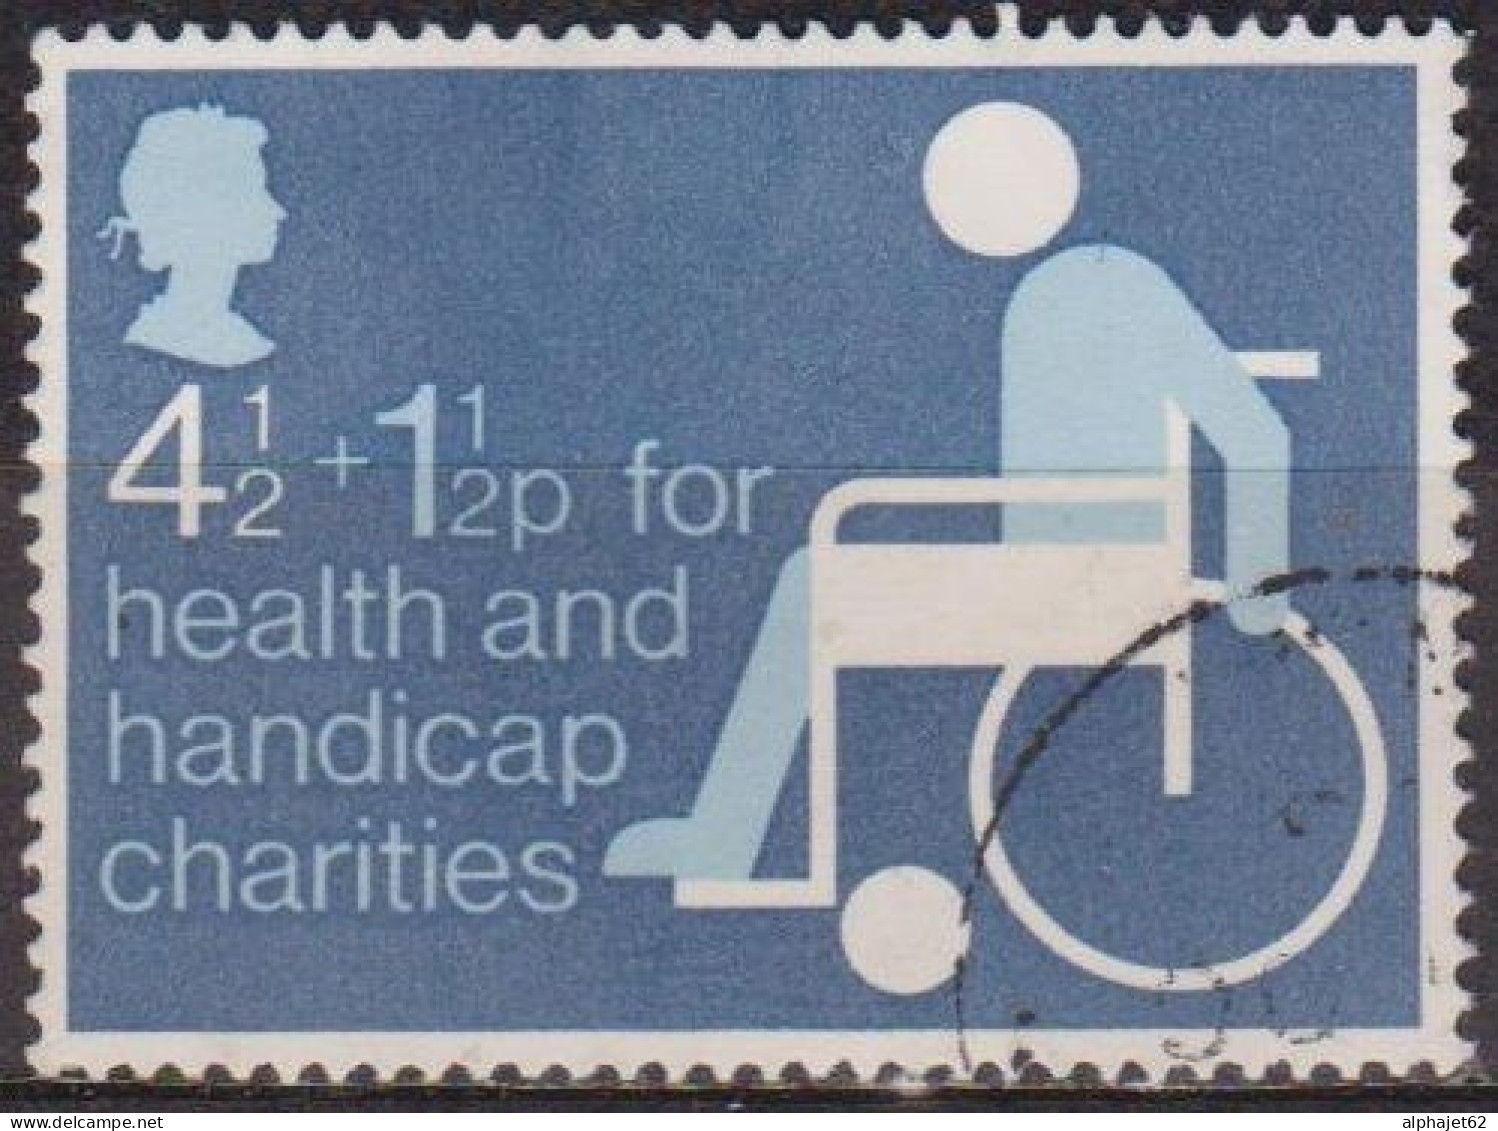 Bienfaisance - GRANDE BRETAGNE - Au Profit Des Handicapés - N° 746 - 1975 - Gebruikt